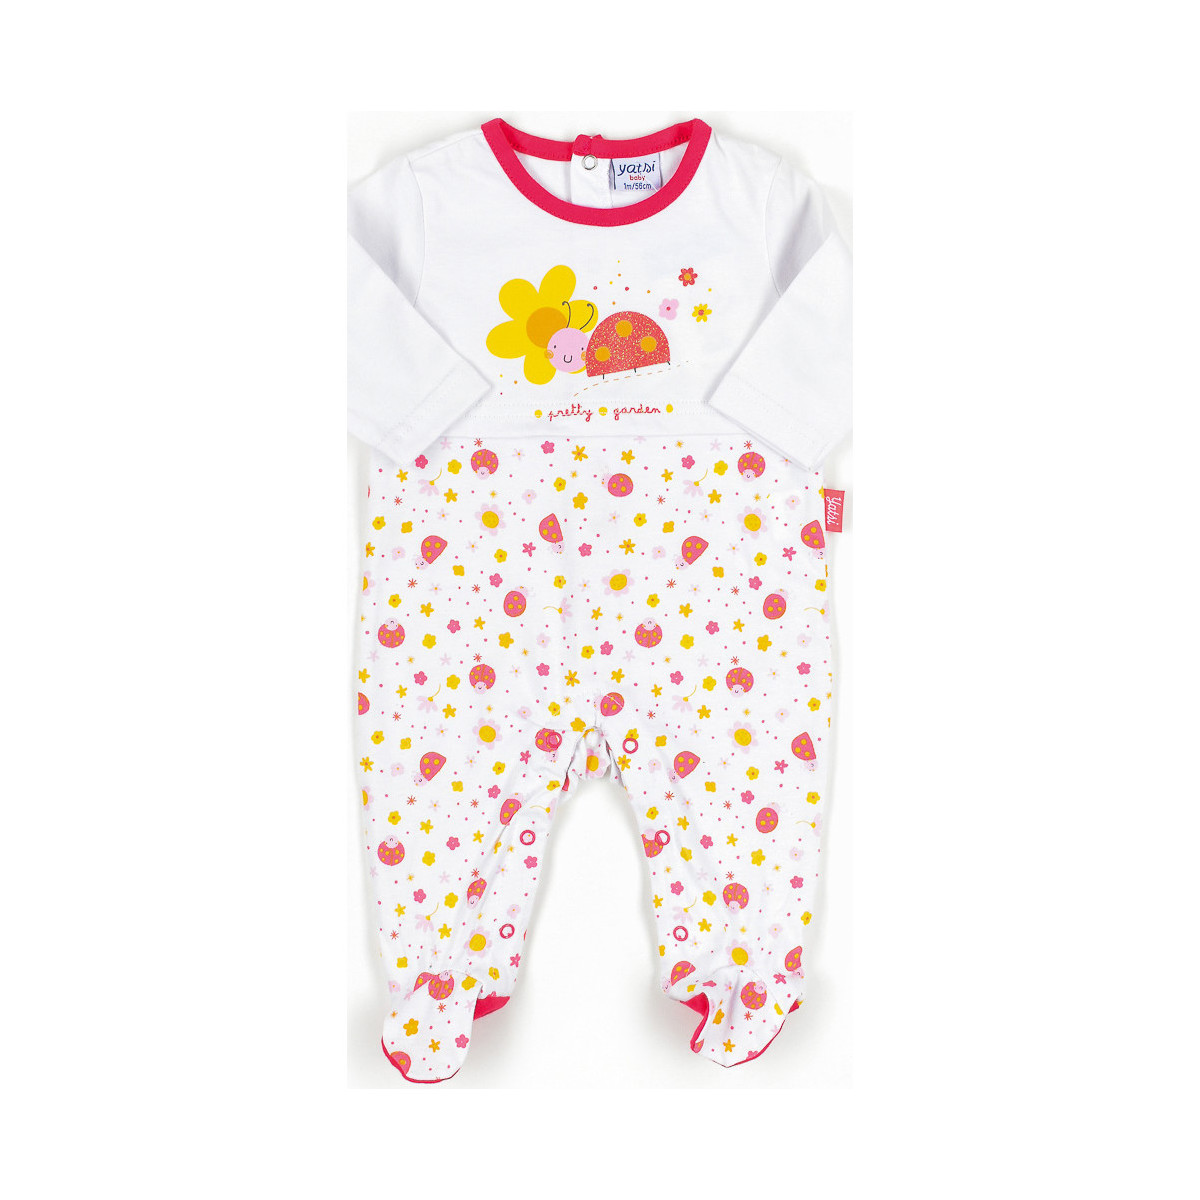 Vêtements Enfant Pyjamas / Chemises de nuit Yatsi 17103064-ROSA Multicolore